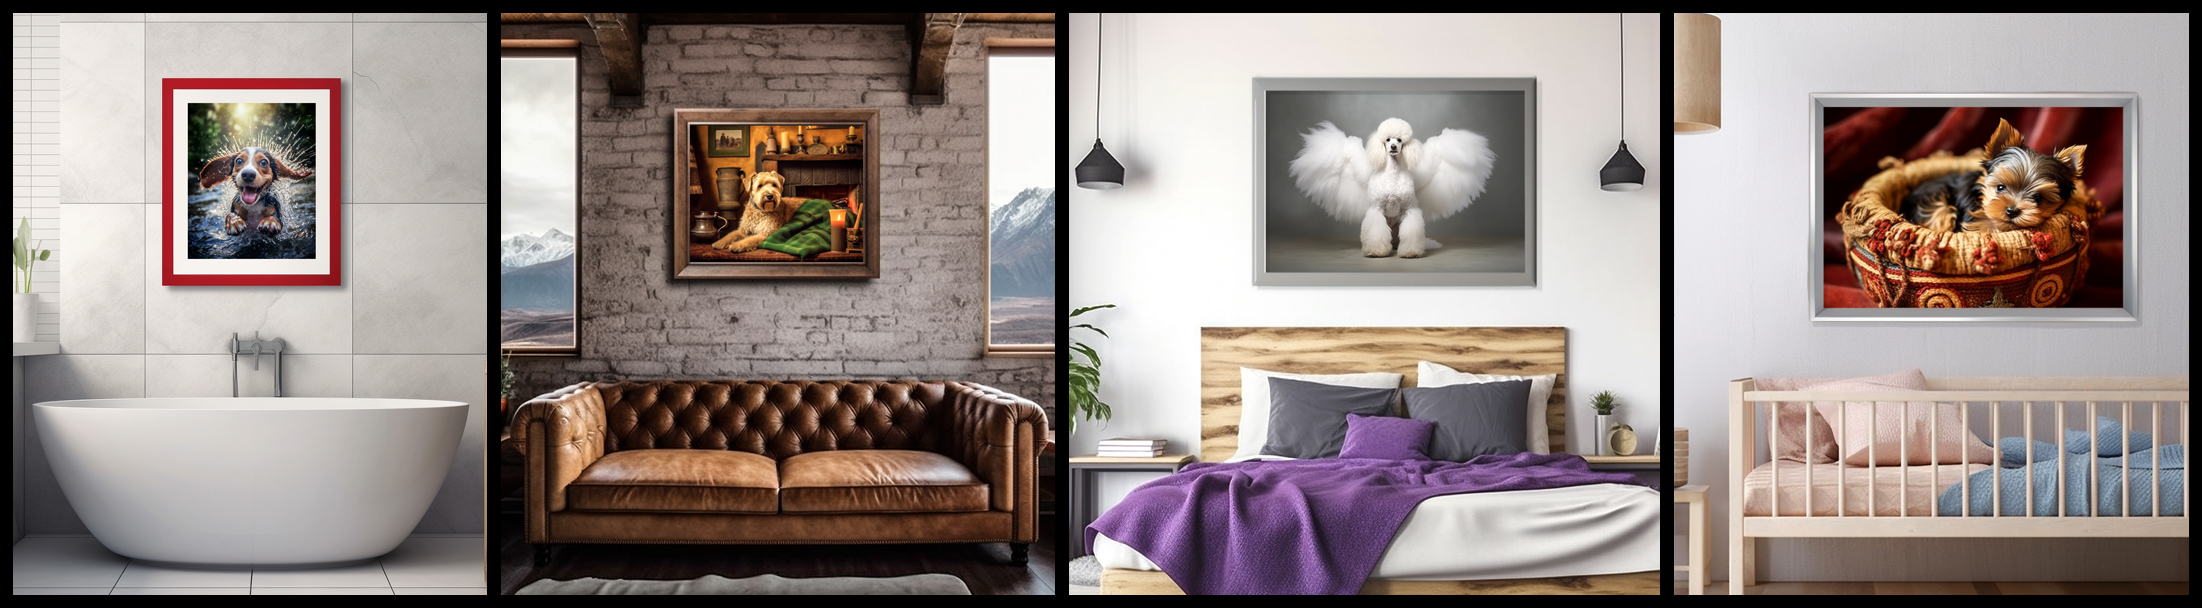 4 rooms showing k9galleryofart framed prints in a bathroom, livingroom, bedroom, and nursery